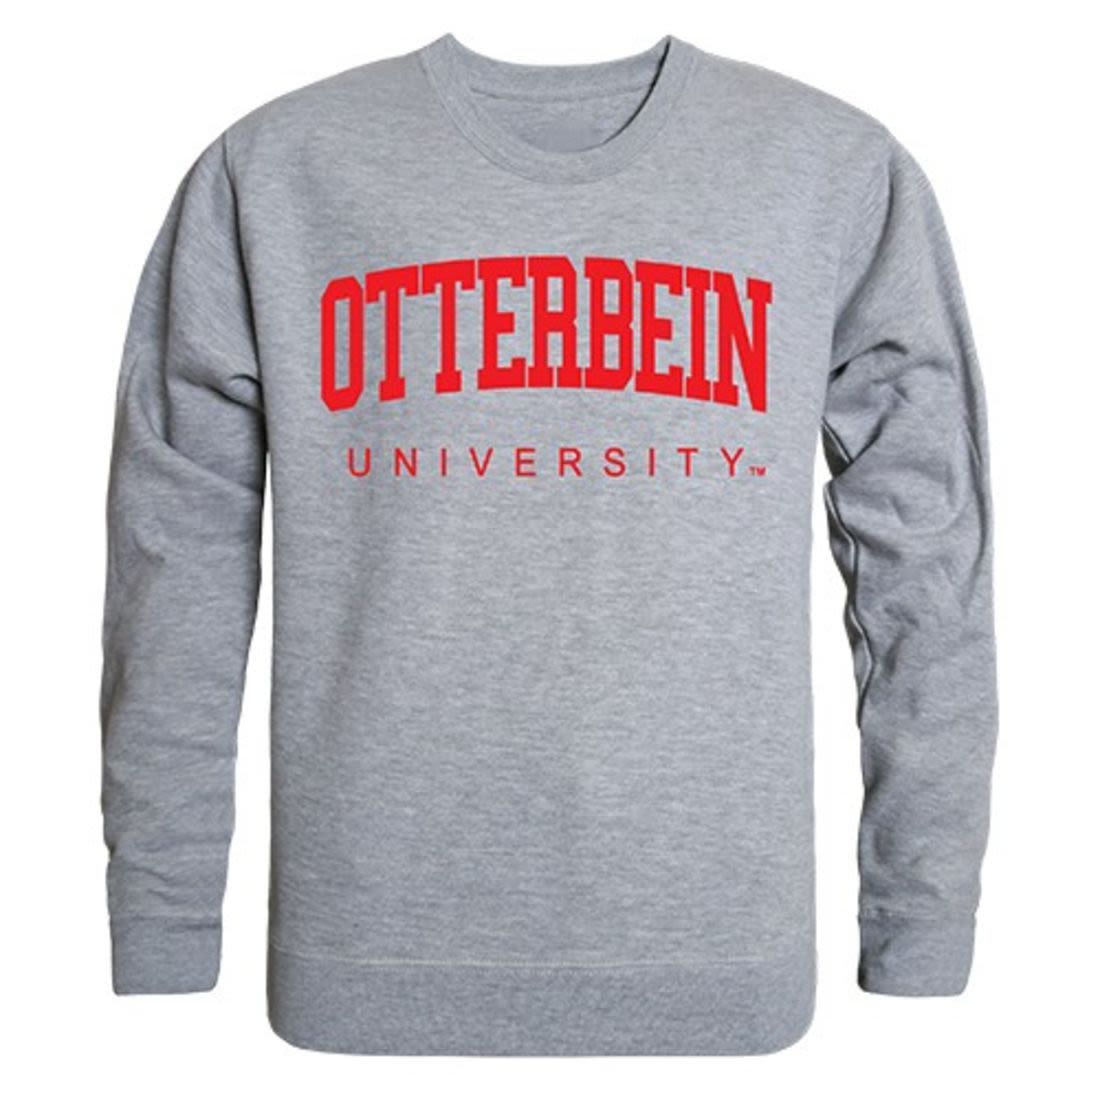 Otterbein University Game Day Crewneck Pullover Sweatshirt Sweater Heather Grey-Campus-Wardrobe